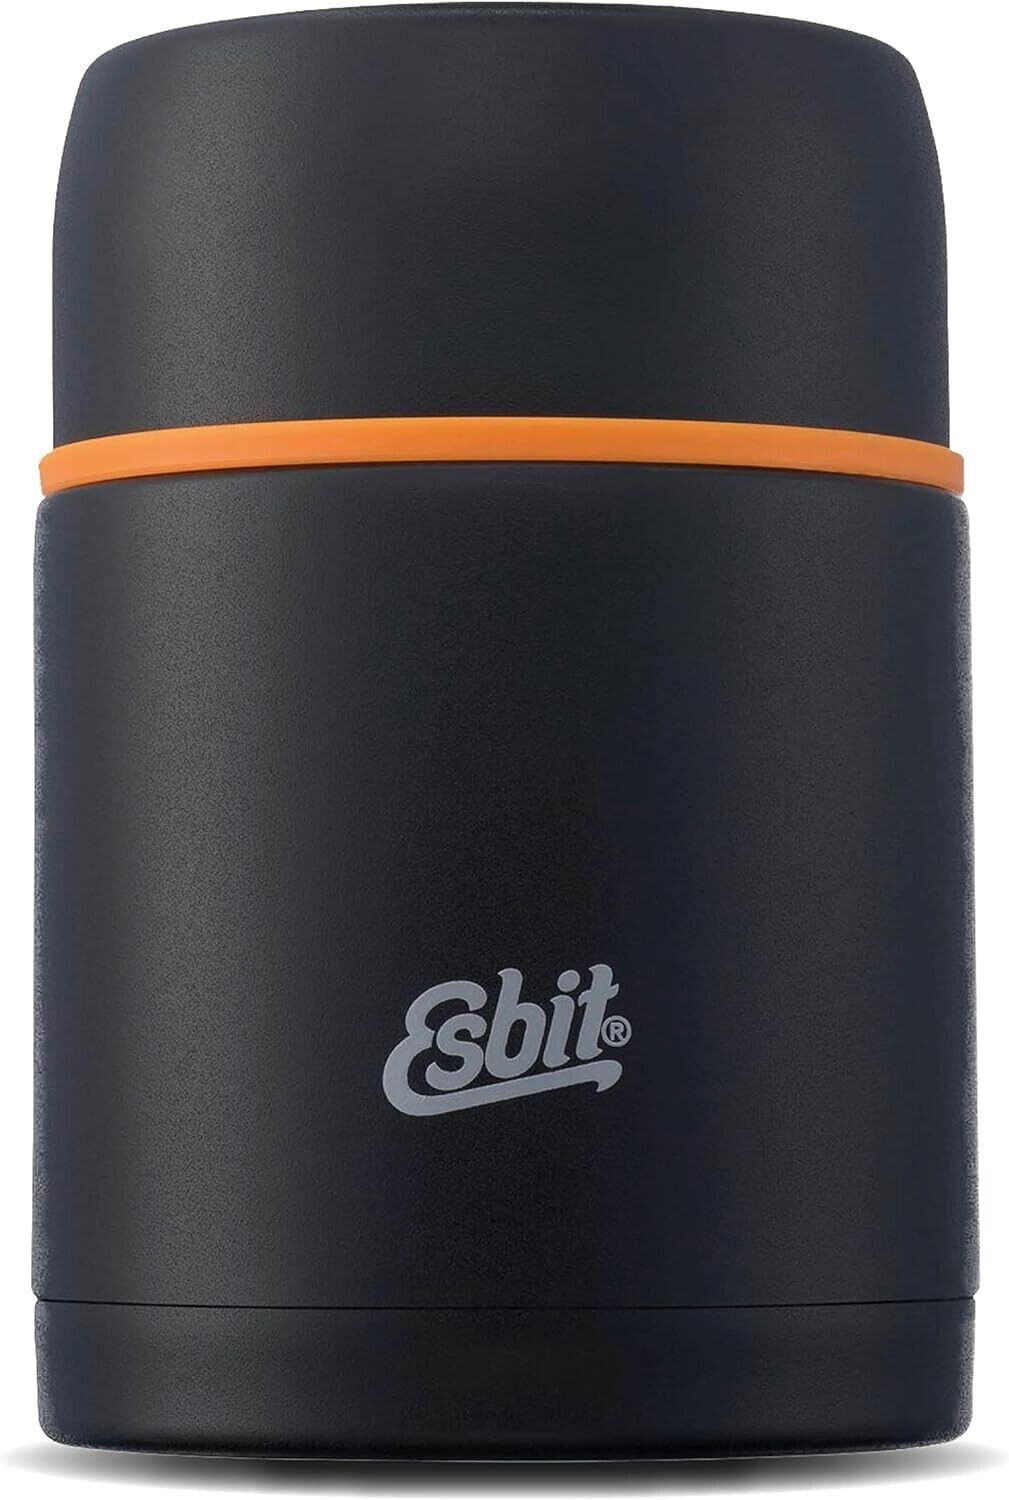 Esbit Thermobehälter Edelstahl Isolierbehälter BPA-Frei 750ml Lunch